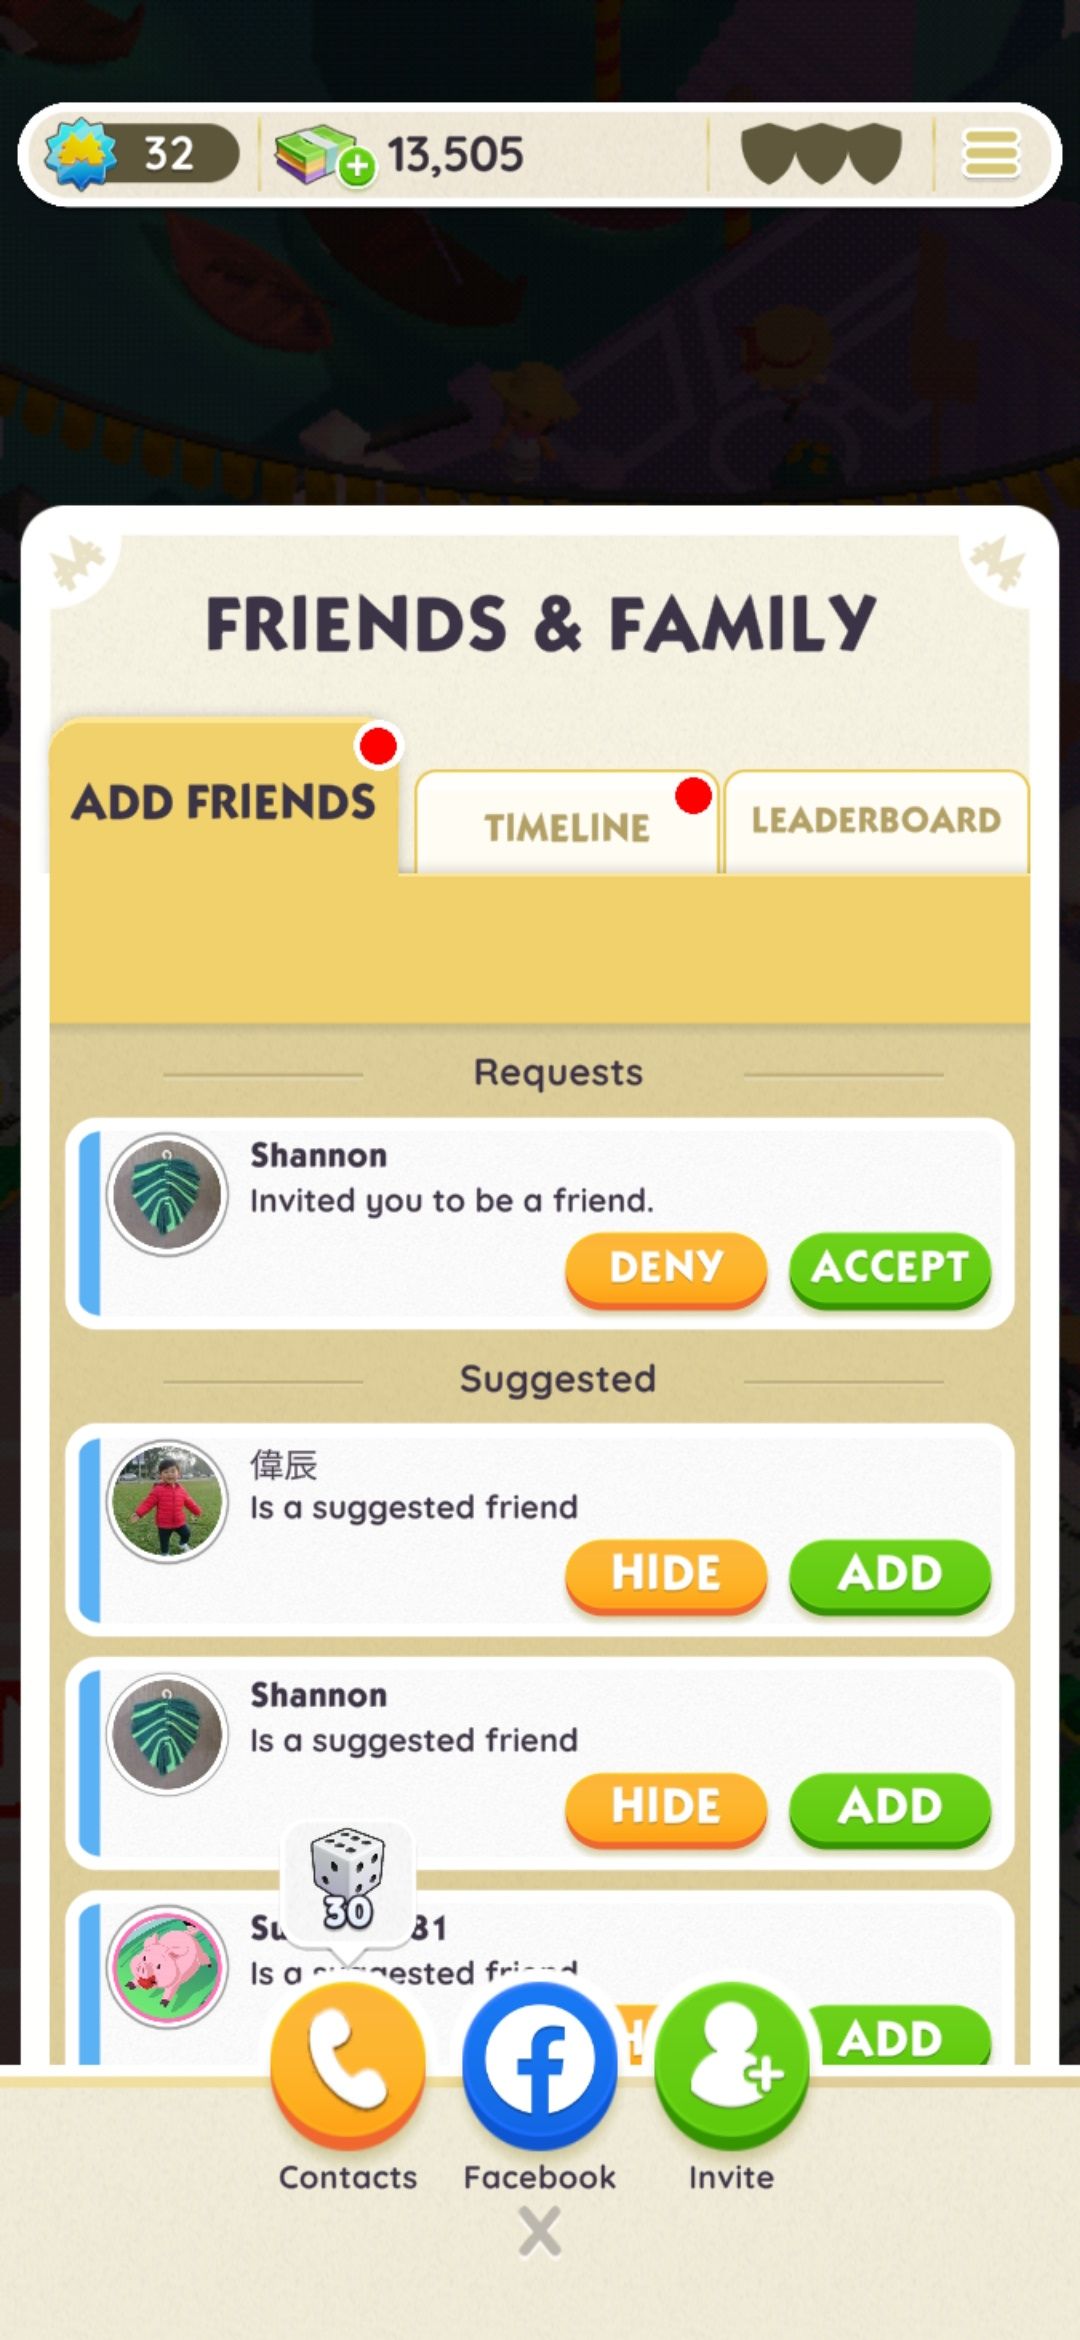 lista de amigos sugeridos com botões adicionar e ocultar no aplicativo monopoly go